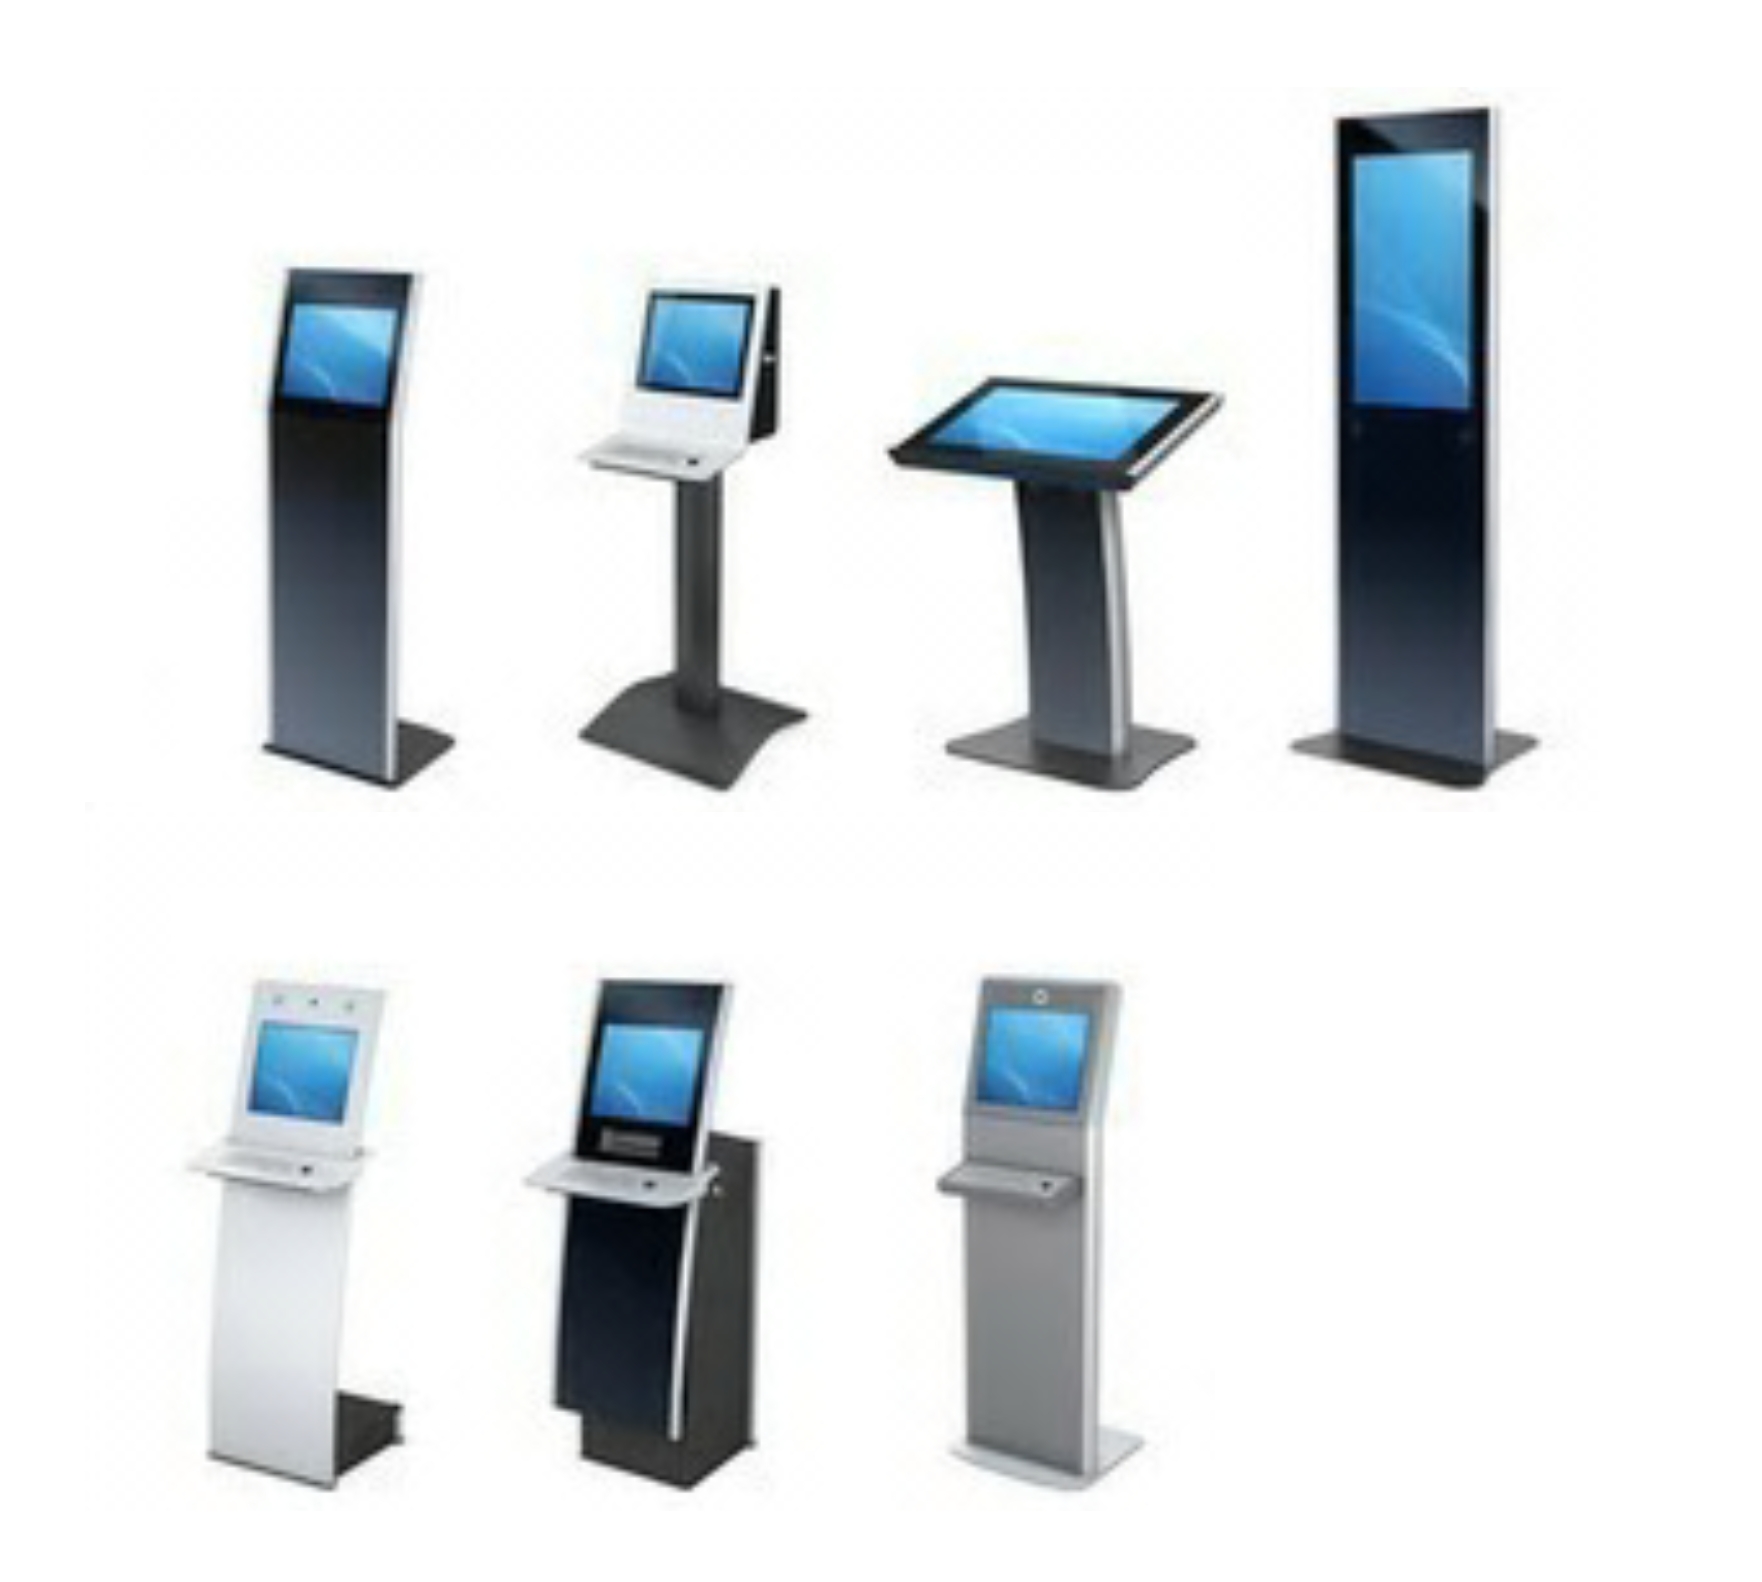 Kiosk Display Stand